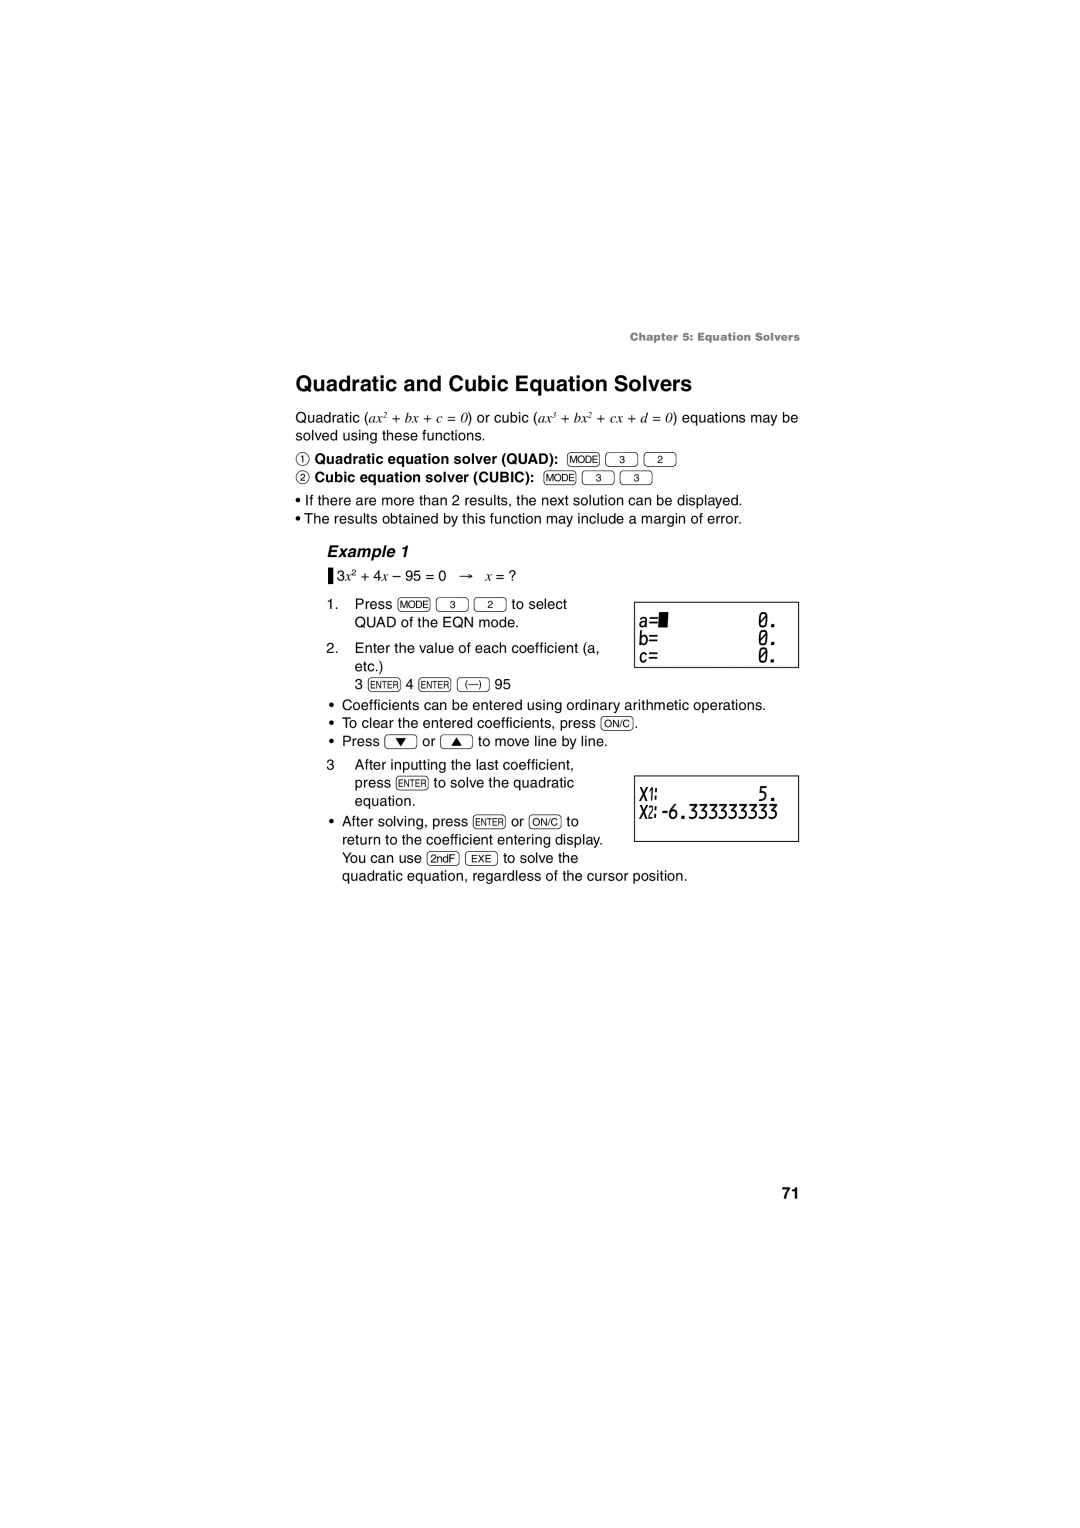 Sharp EL-5230, EL-5250 operation manual Quadratic and Cubic Equation Solvers, X¤-6.333333333, Example 